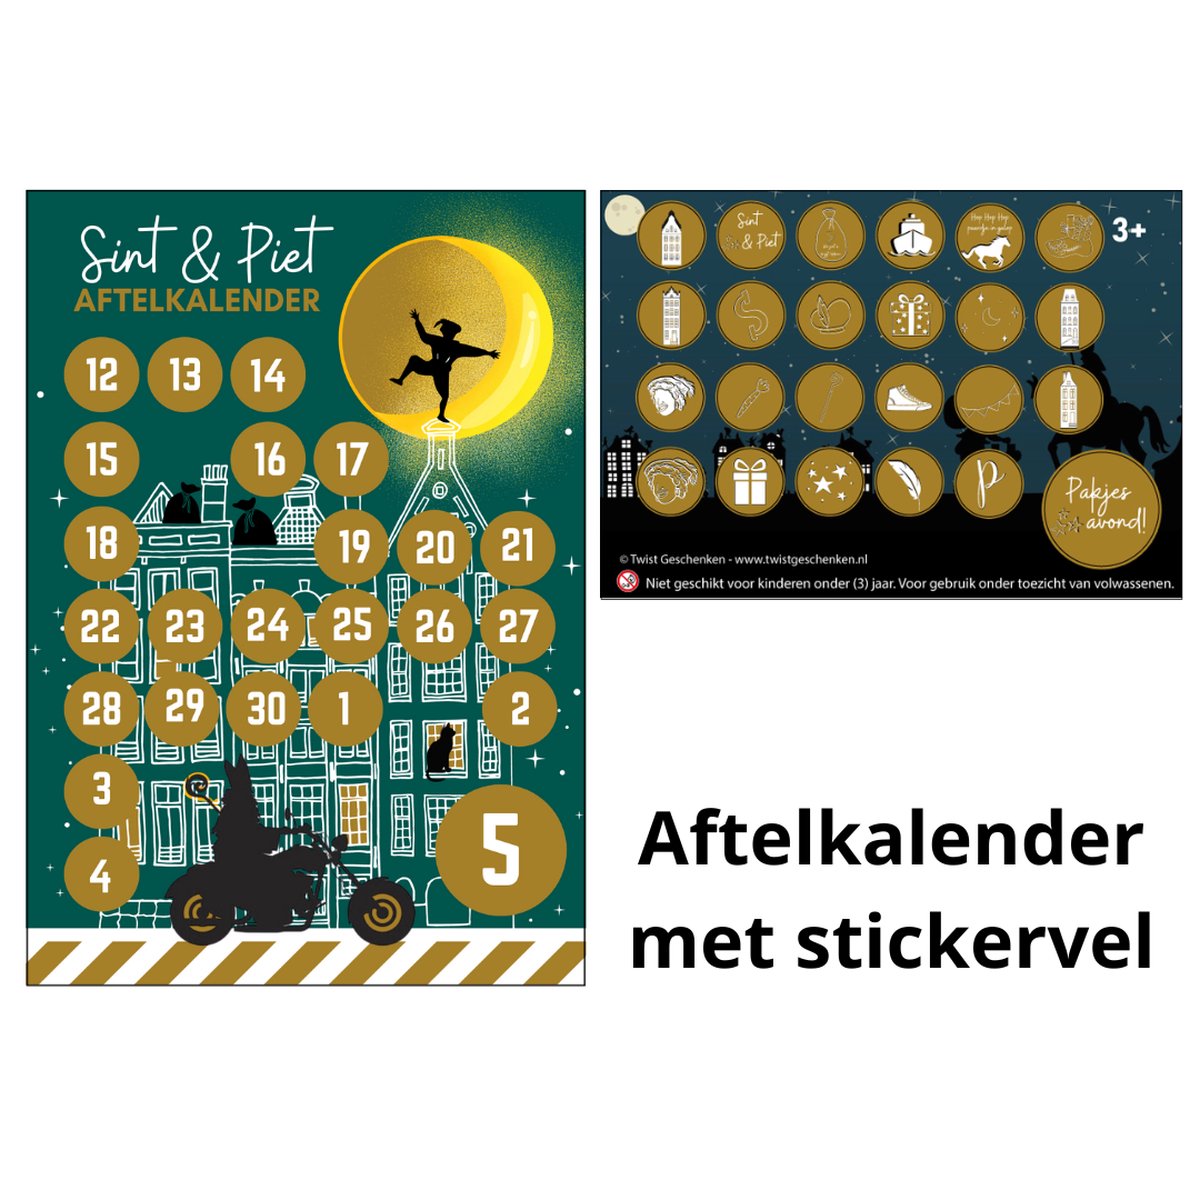 Sinterklaas aftelkalender met stickervel - sinterklaas - aftelkalender jongen - aftelkalender - schoentje zetten - sinterklaas kalender